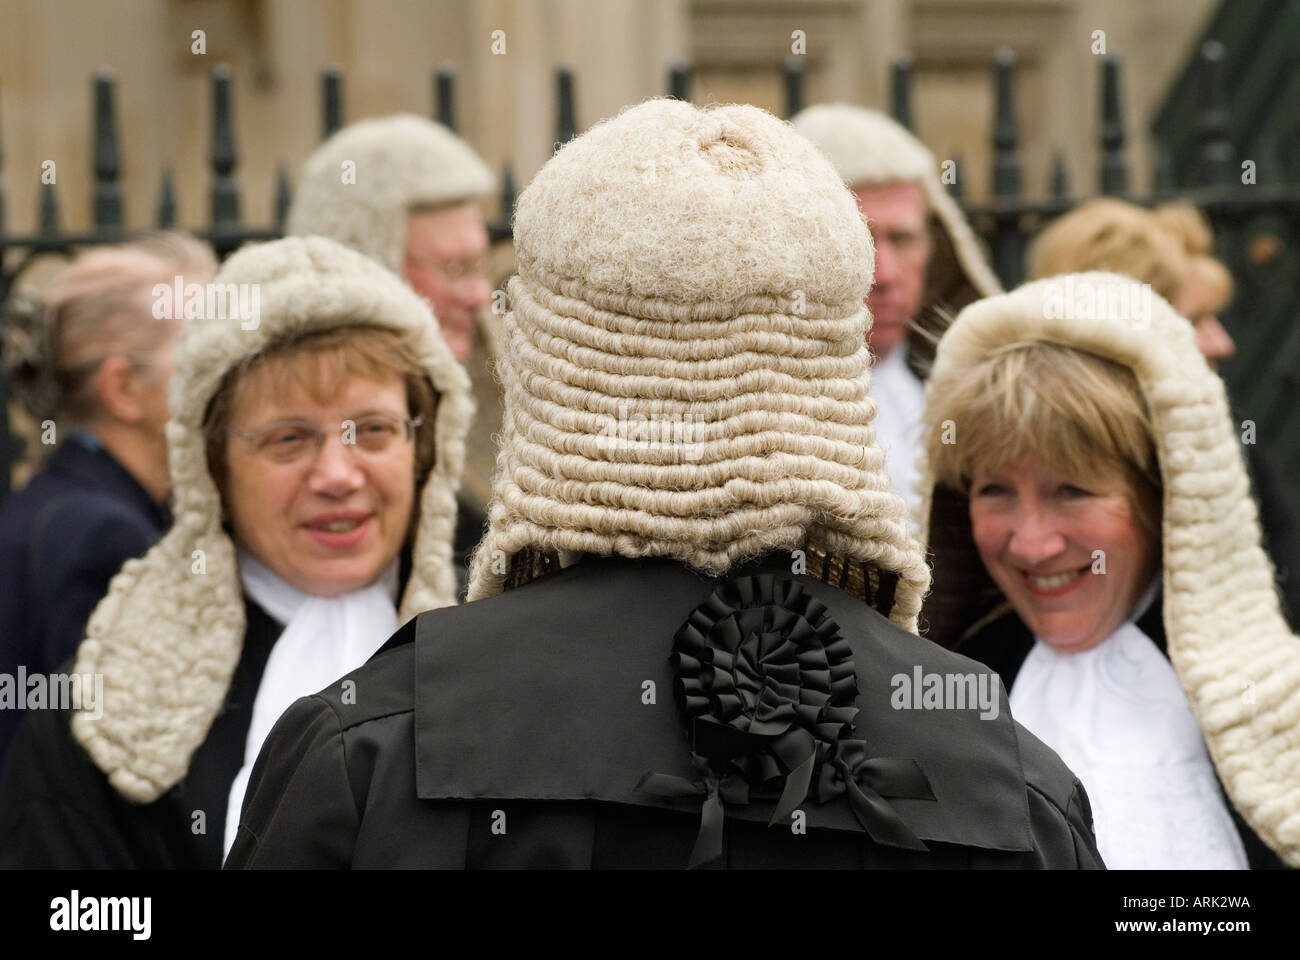 Richterinnen WIG Women District Judge Barristers nehmen an dem Lord  Chancellors Breakfast Teil, das Anfang des neuen juristischen Jahres London  England 2006 2000s UK ist Stockfotografie - Alamy